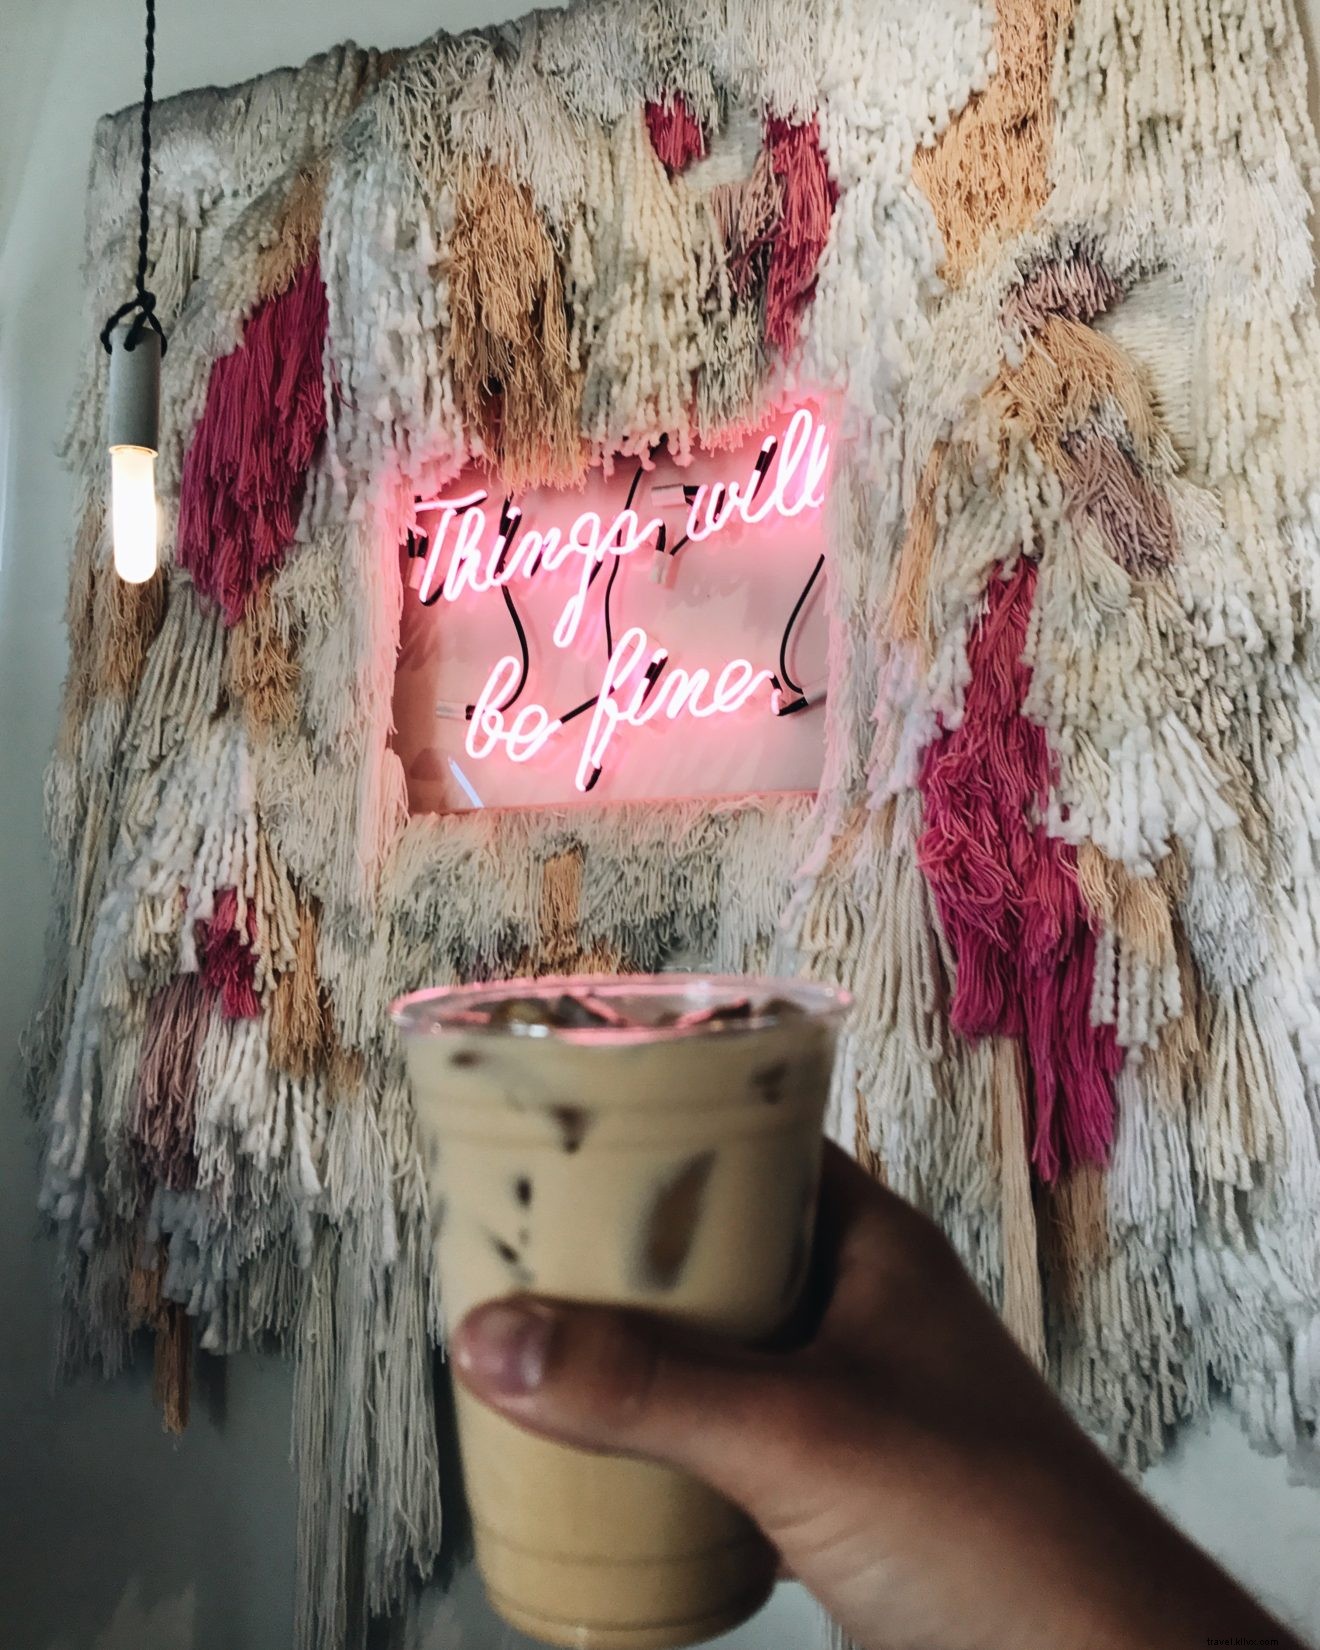 Tour de café:6 cafeterías en Los Ángeles que son el paraíso de Instagram 